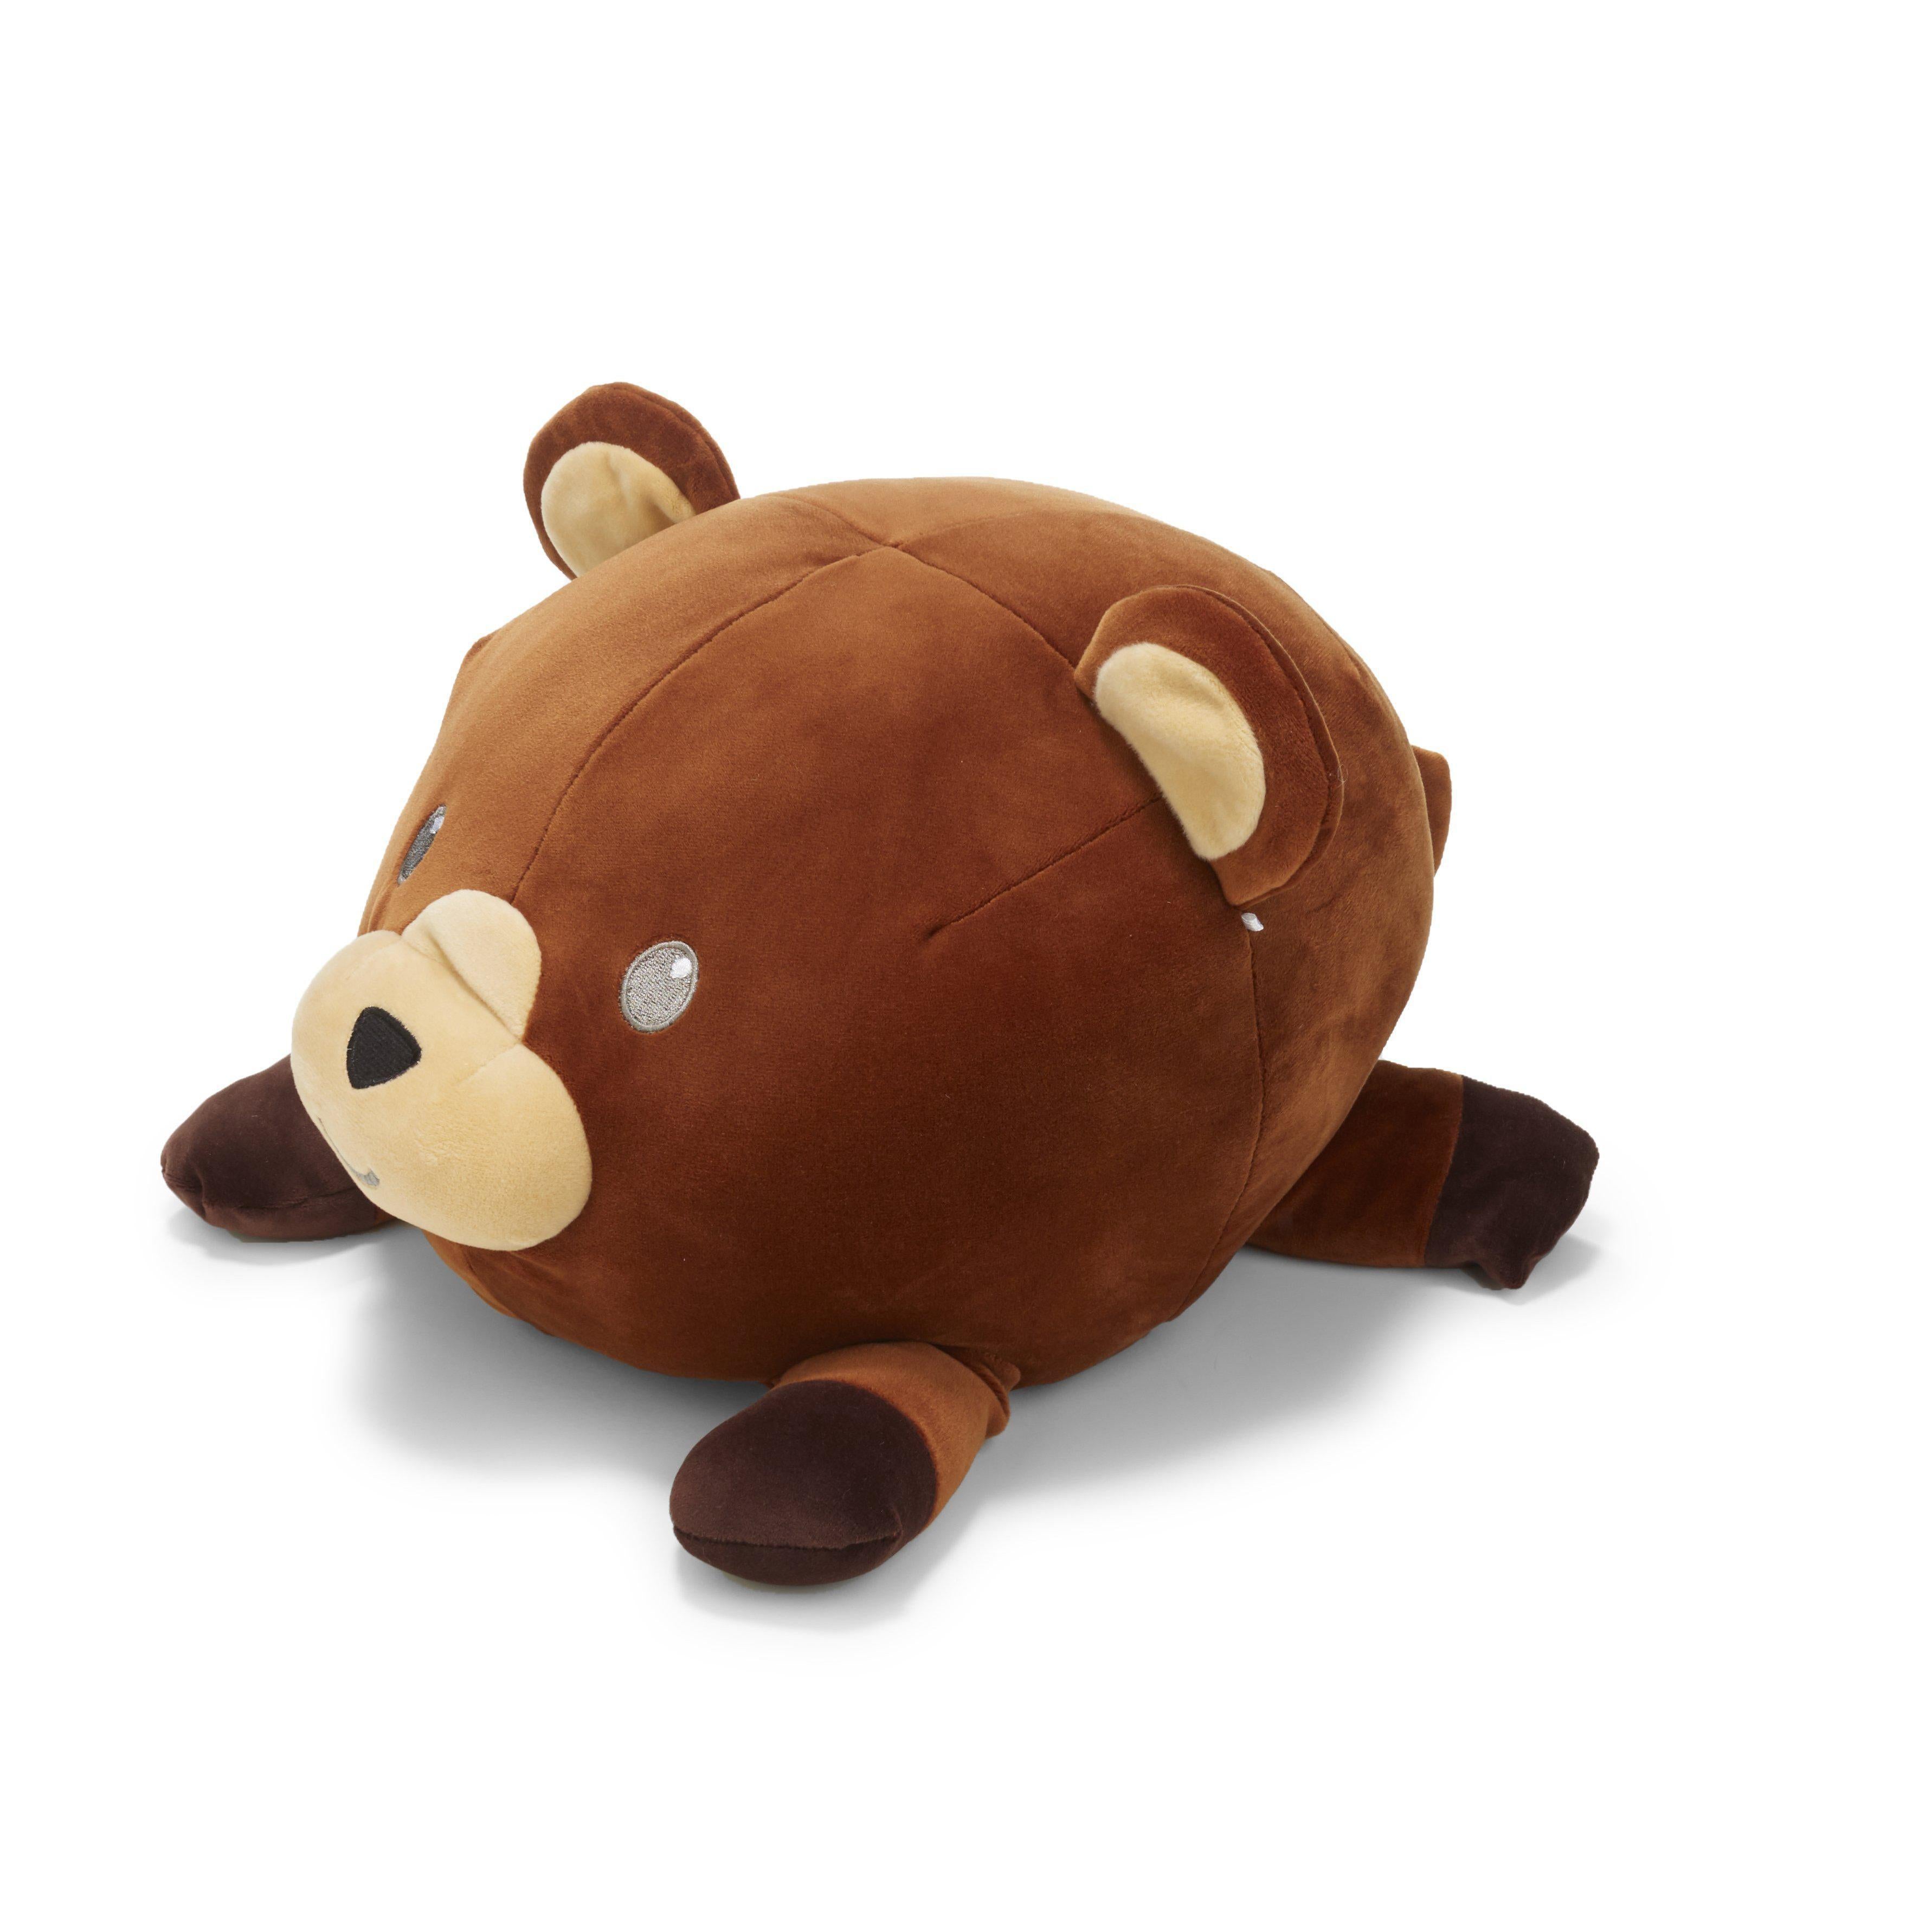 giant stuffed bear amazon